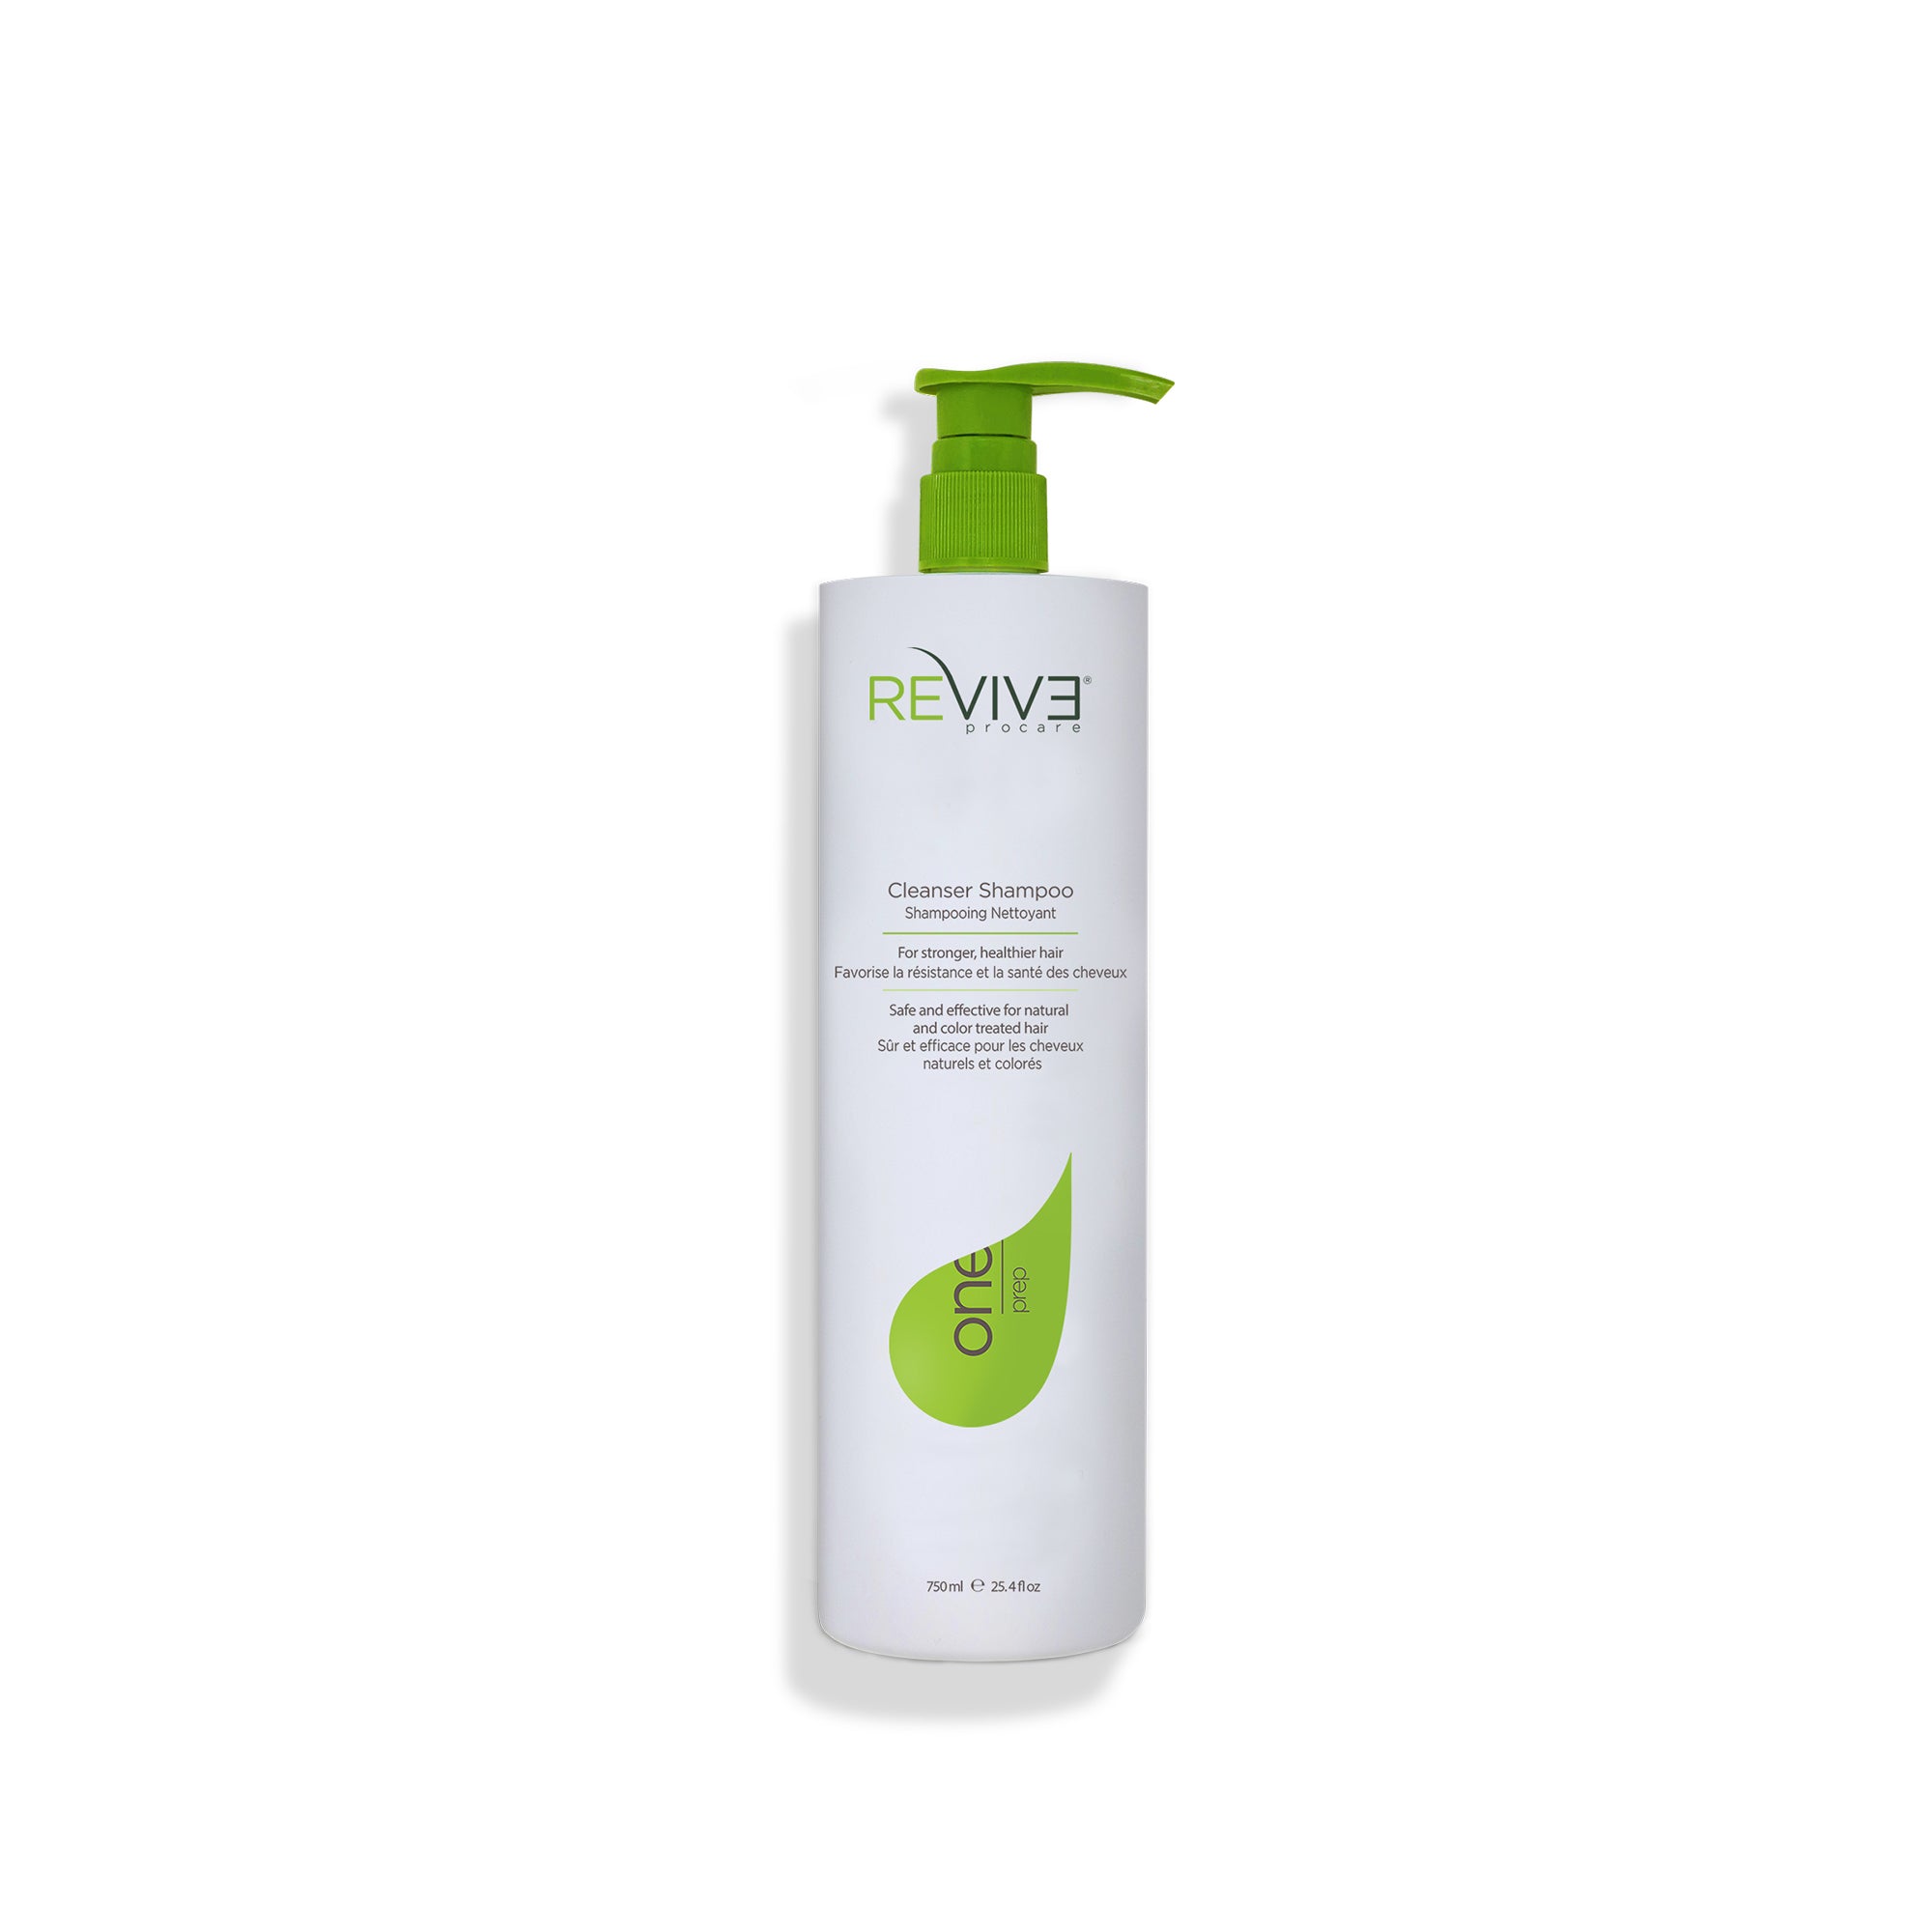 – Procare Reviv3 PREP oz Shampoo 25.4 - Cleanser